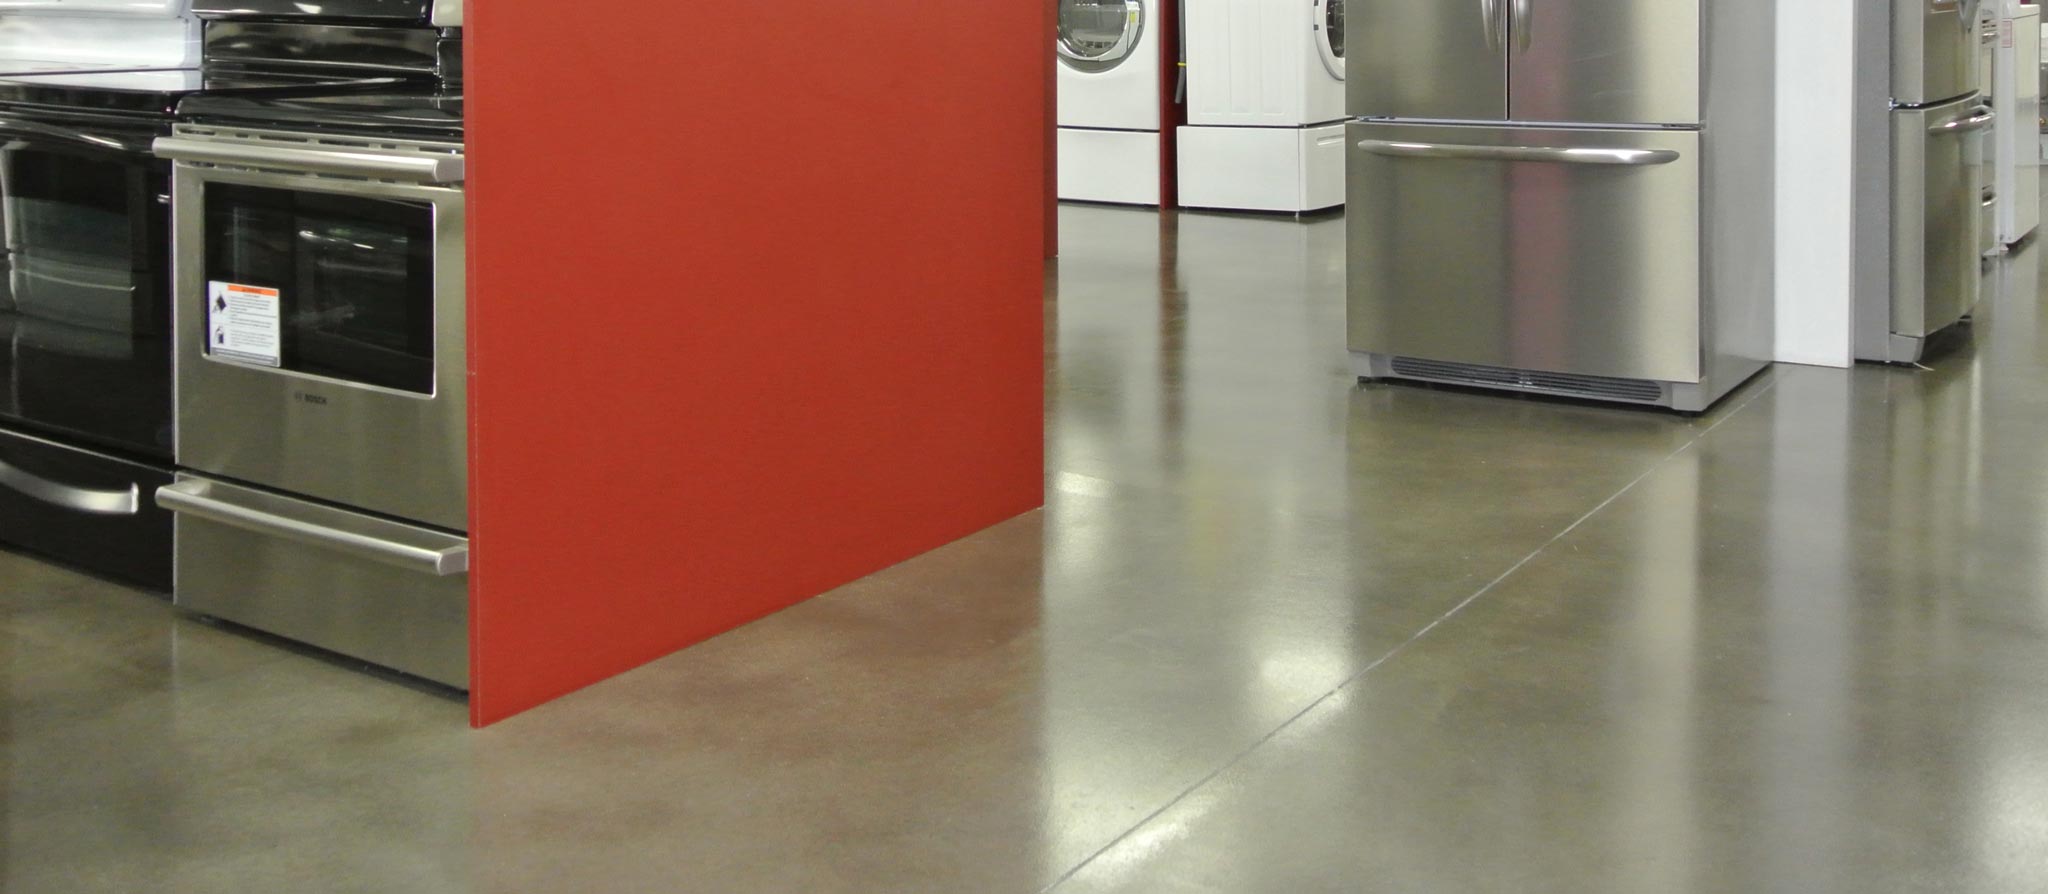 Brubaker Appliance Center polished concrete floor 02